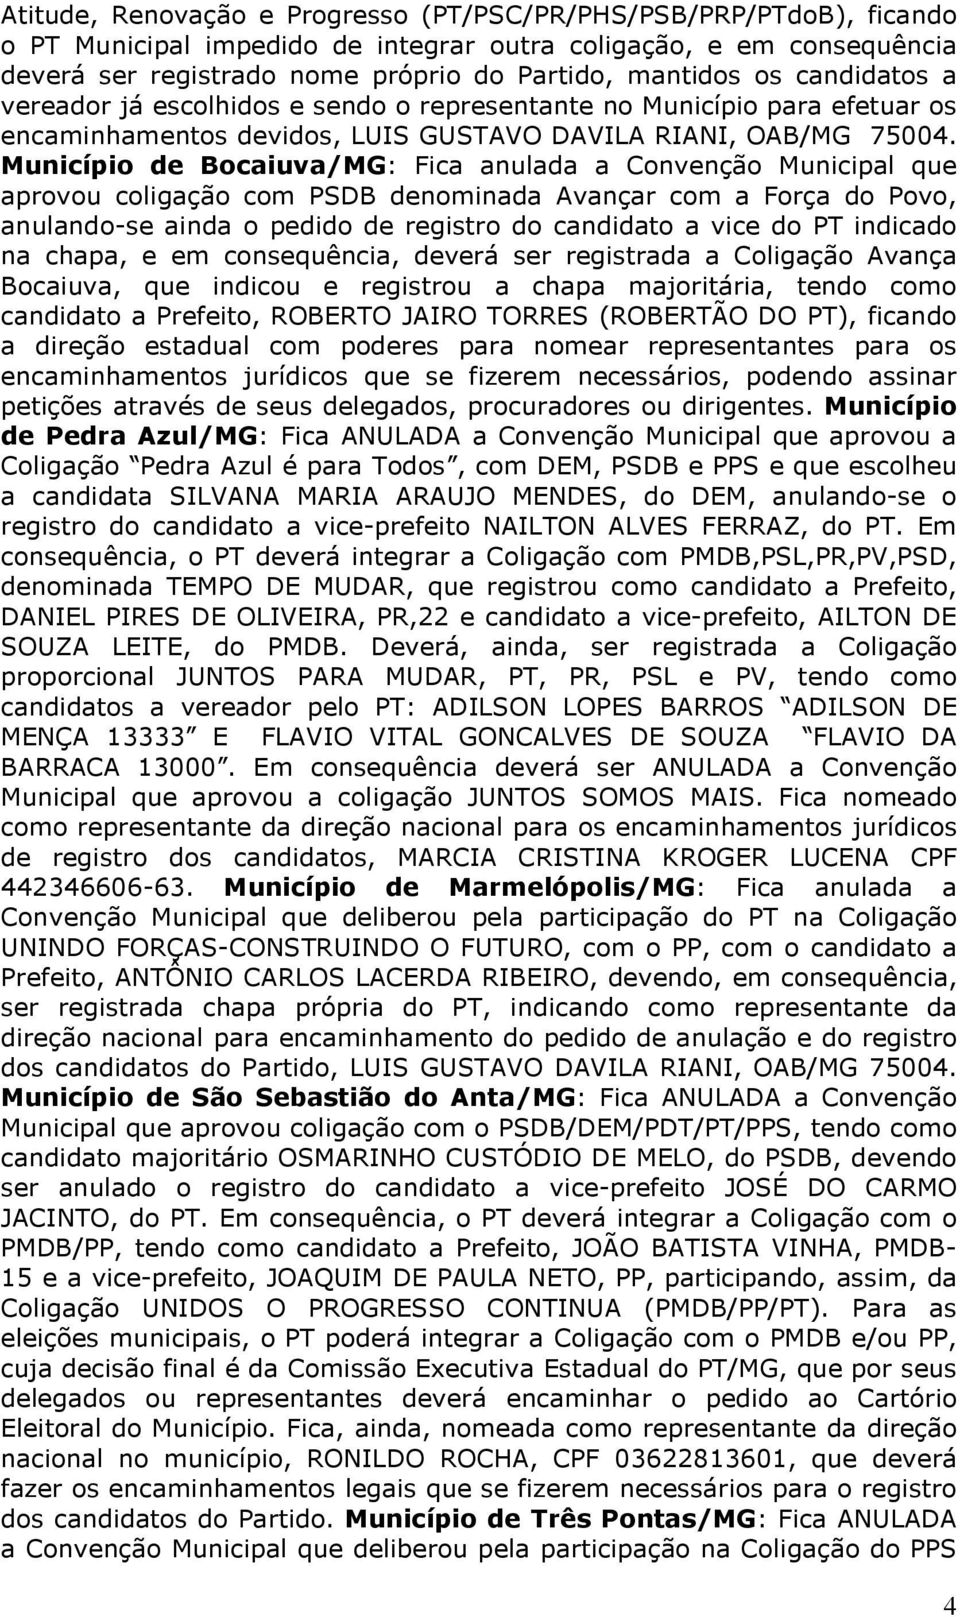 Município de Bocaiuva/MG: Fica anulada a Convenção Municipal que aprovou coligação com PSDB denominada Avançar com a Força do Povo, anulando-se ainda o pedido de registro do candidato a vice do PT